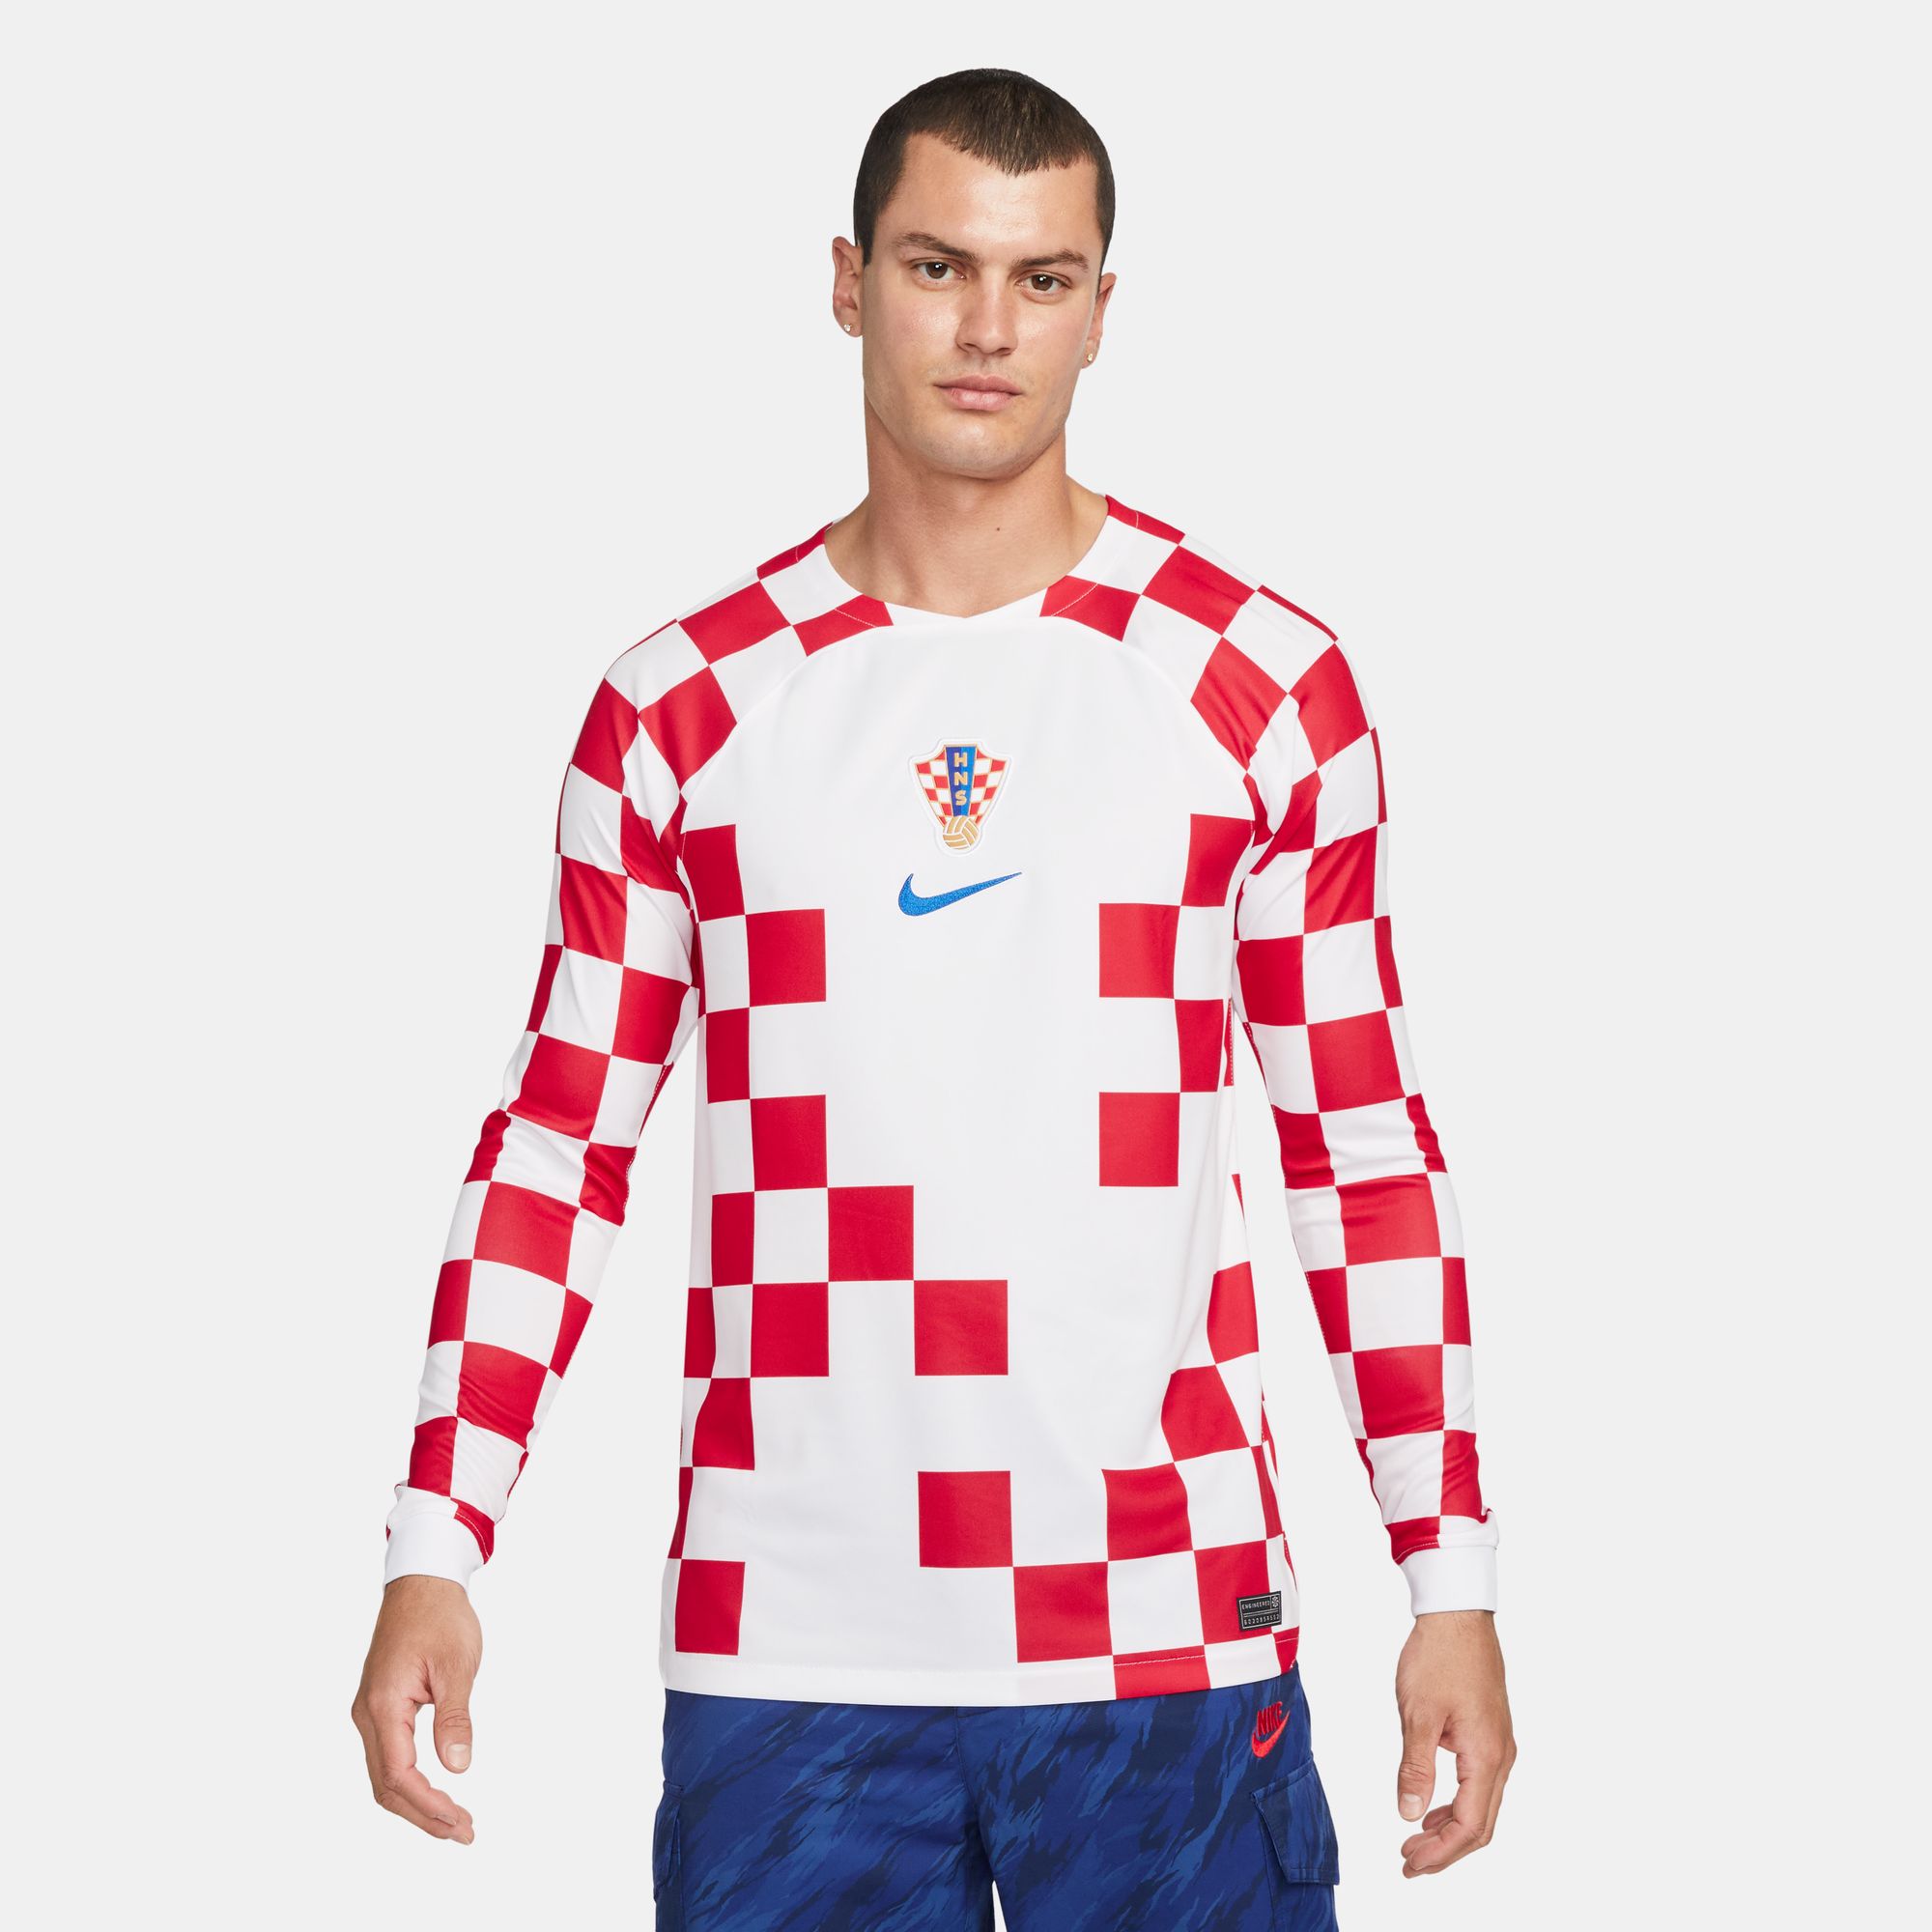 croatia goalie jersey